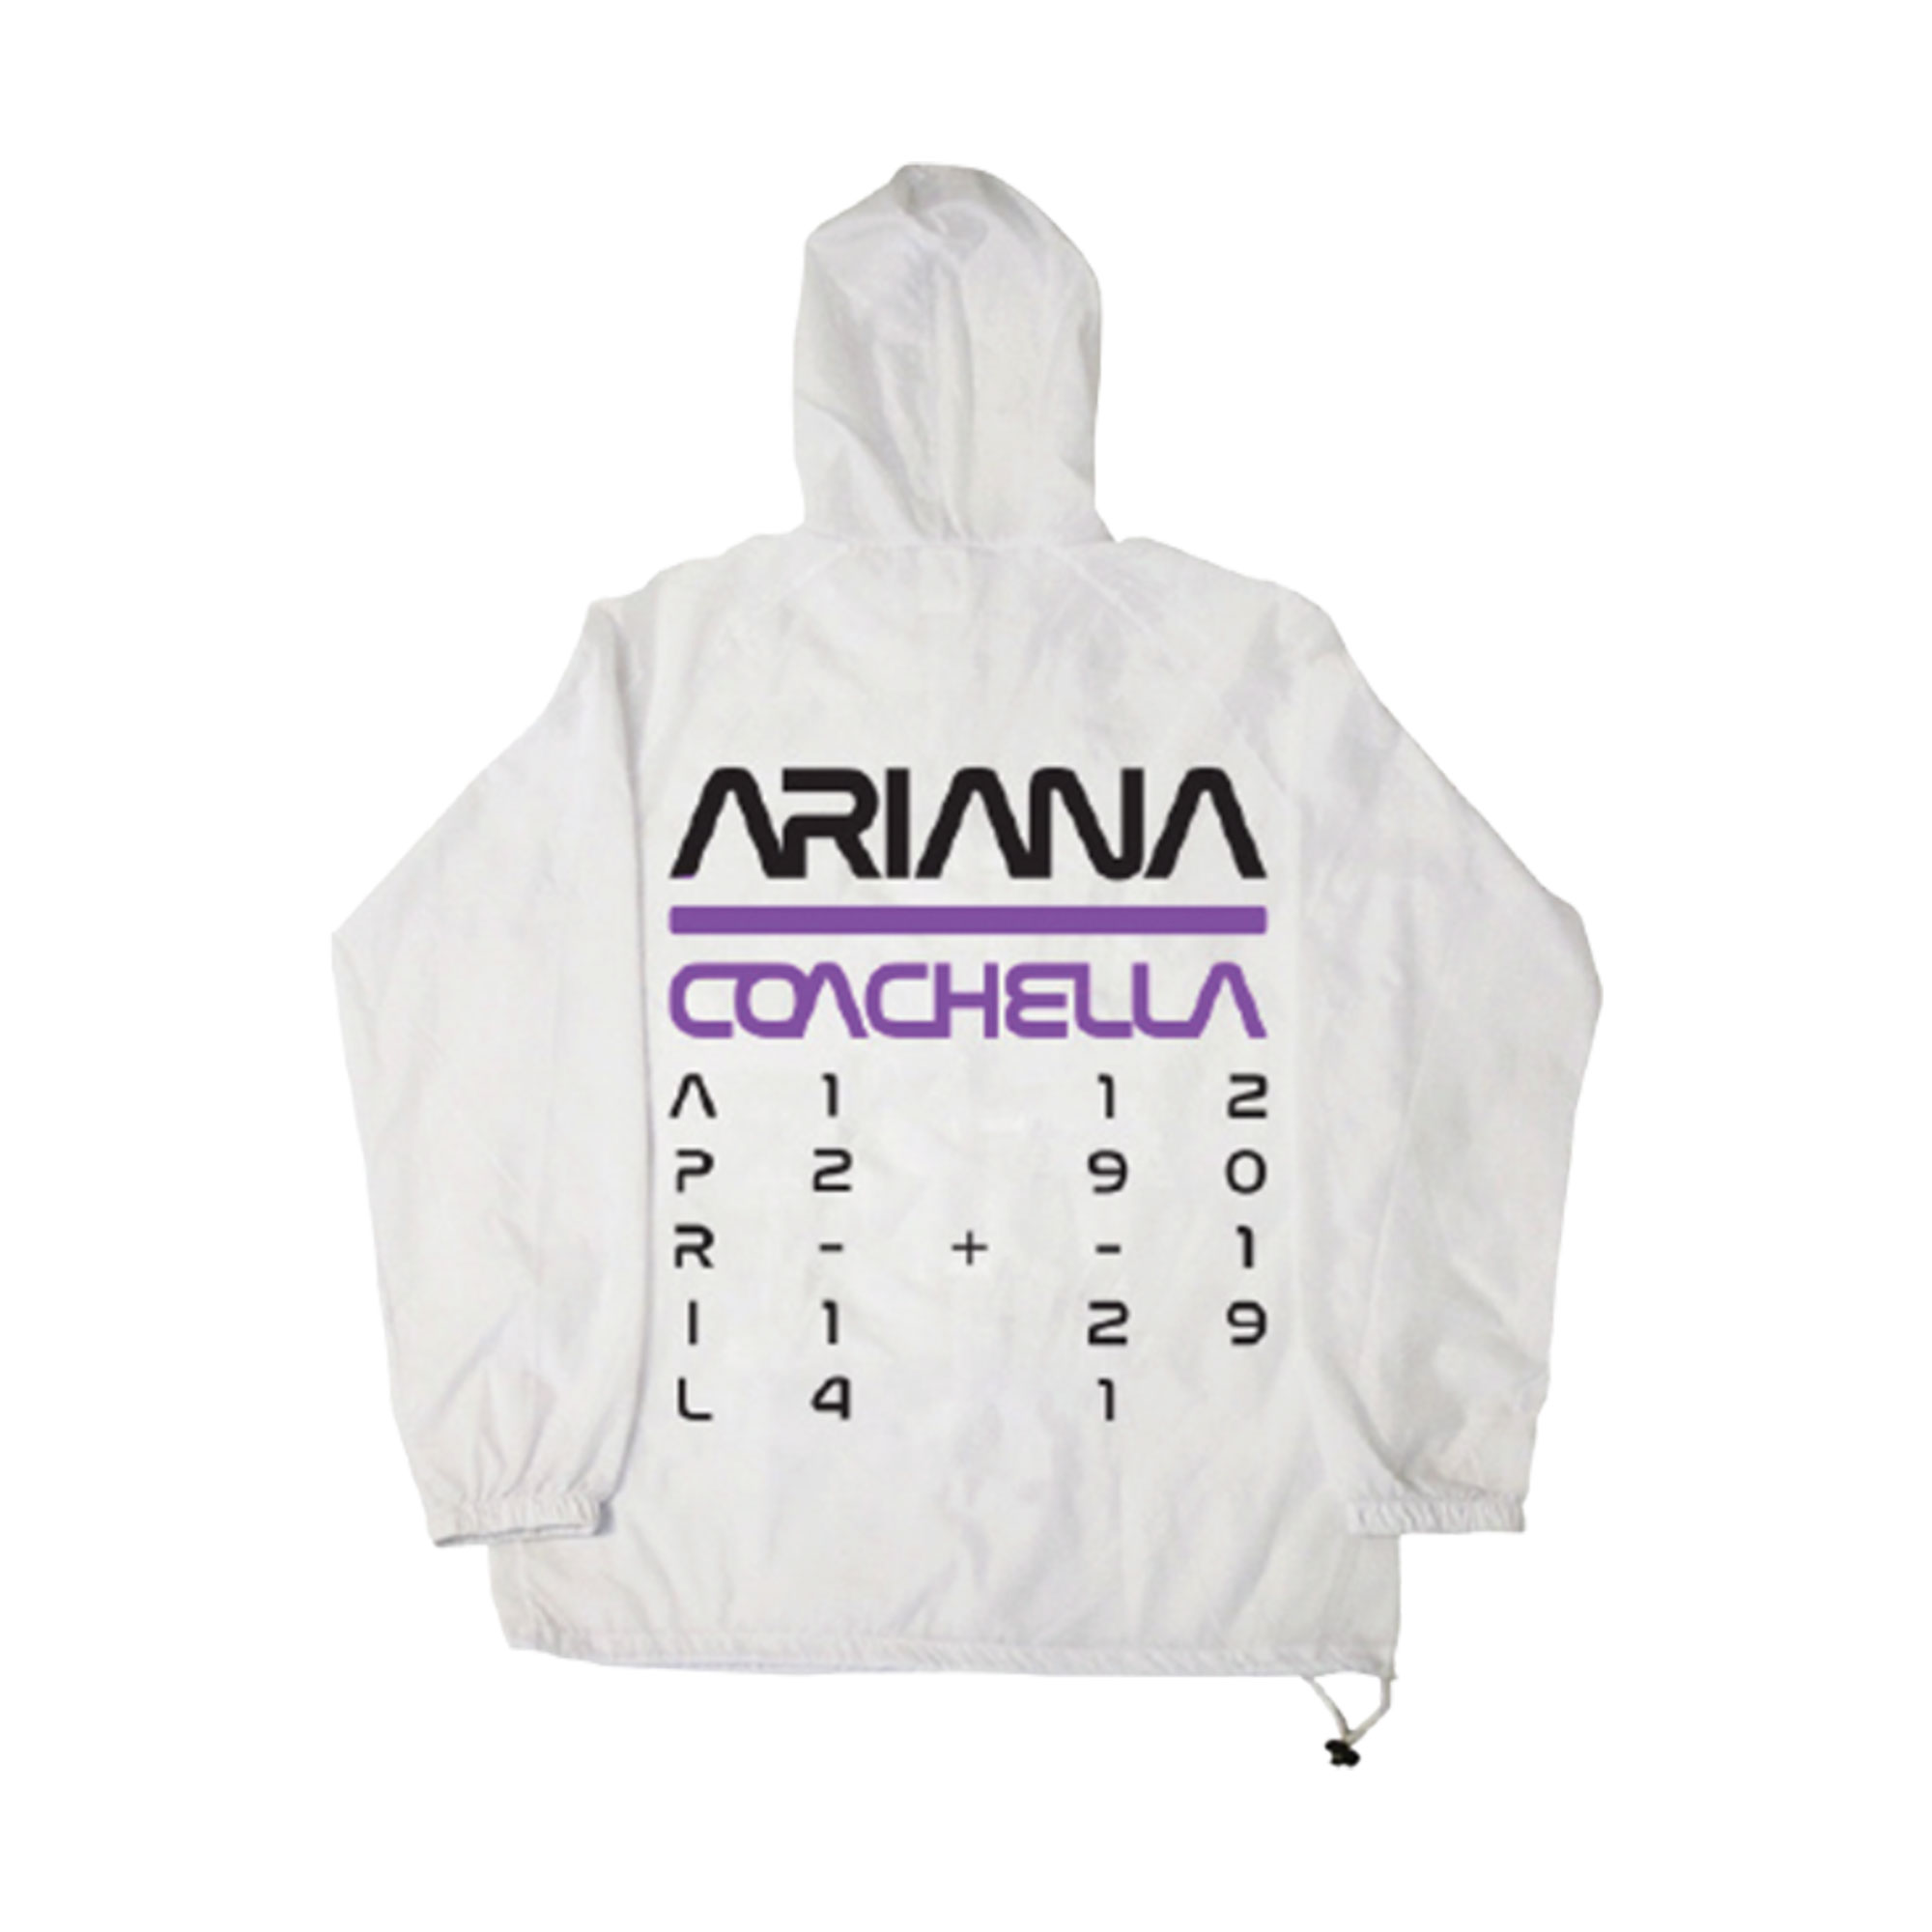 Ariana Grande S Coachella 2019 Nasa Collection Details